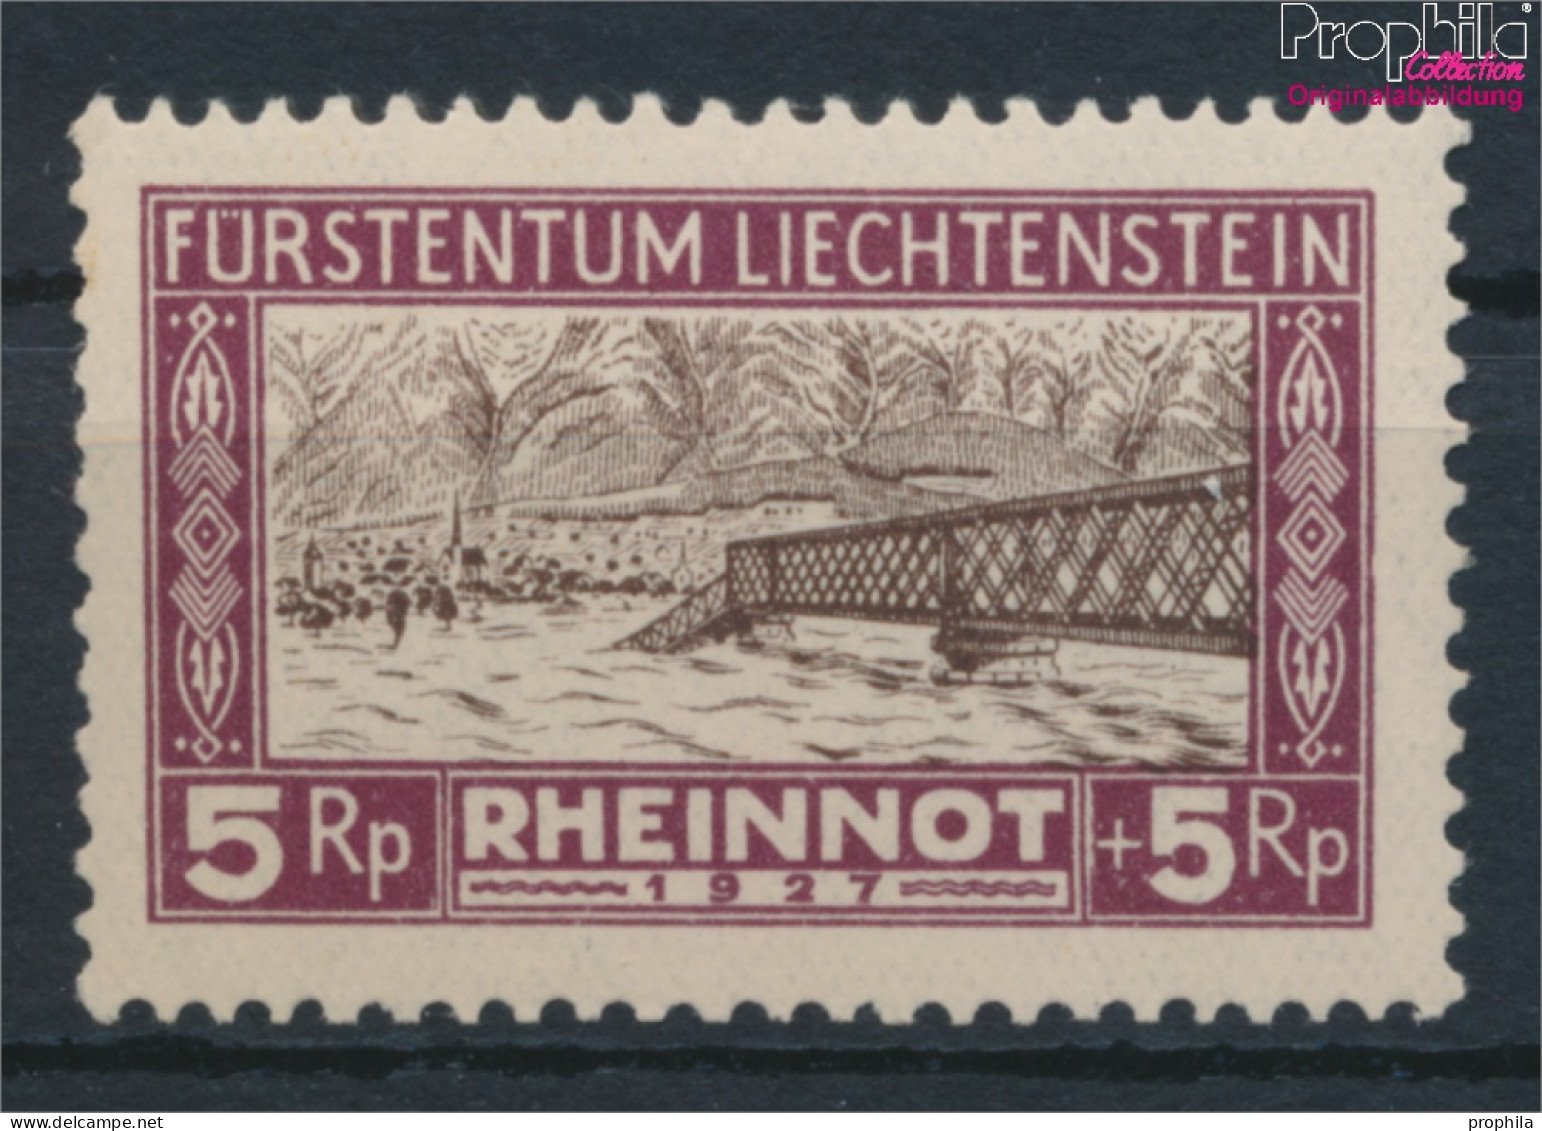 Liechtenstein 78 Postfrisch 1928 Hochwassergeschädigte (10377390 - Nuovi